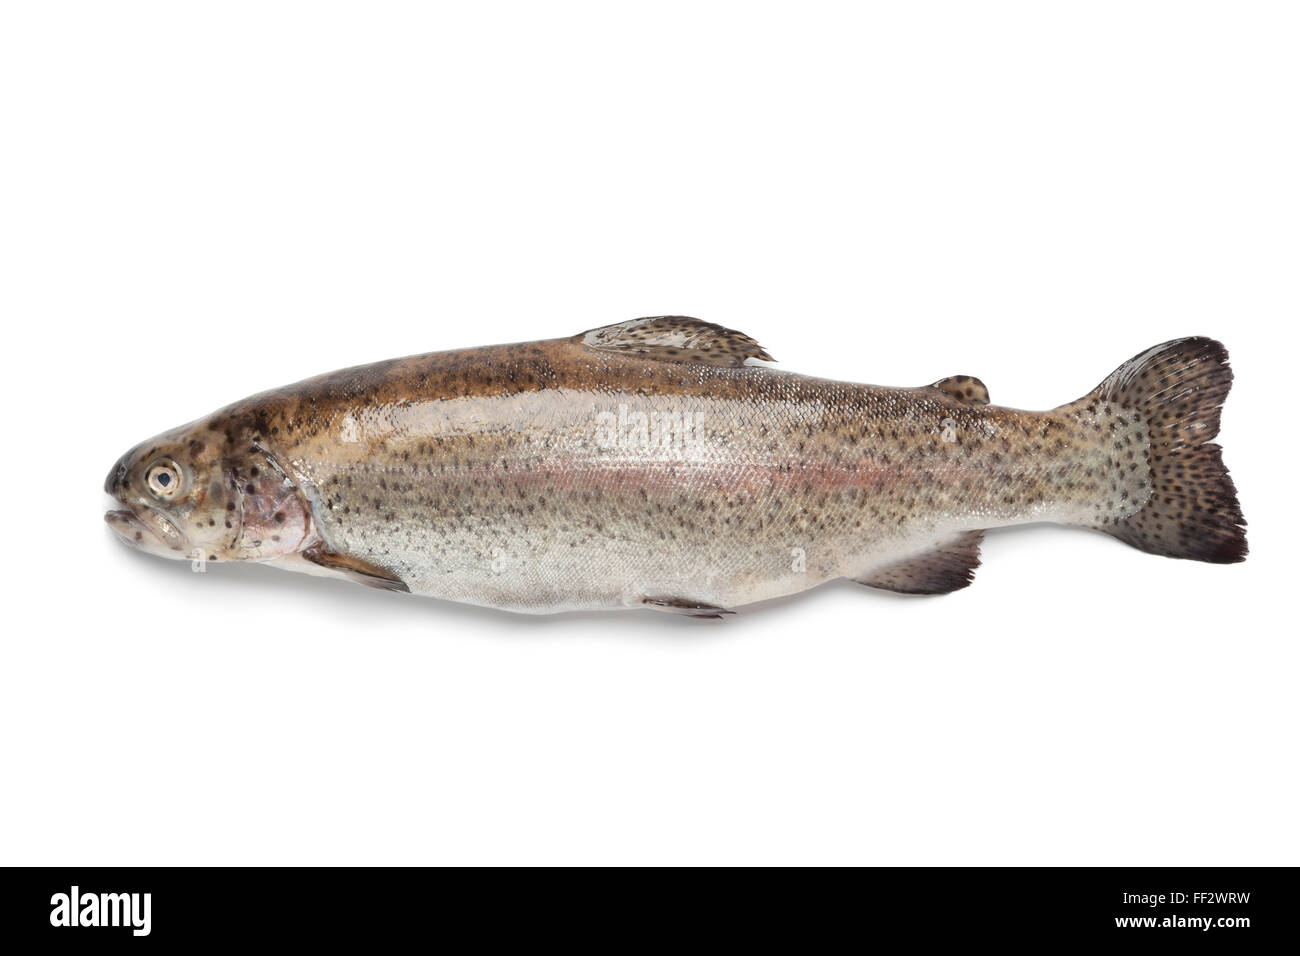 Whole single fresh Salmon trout on white background Stock Photo